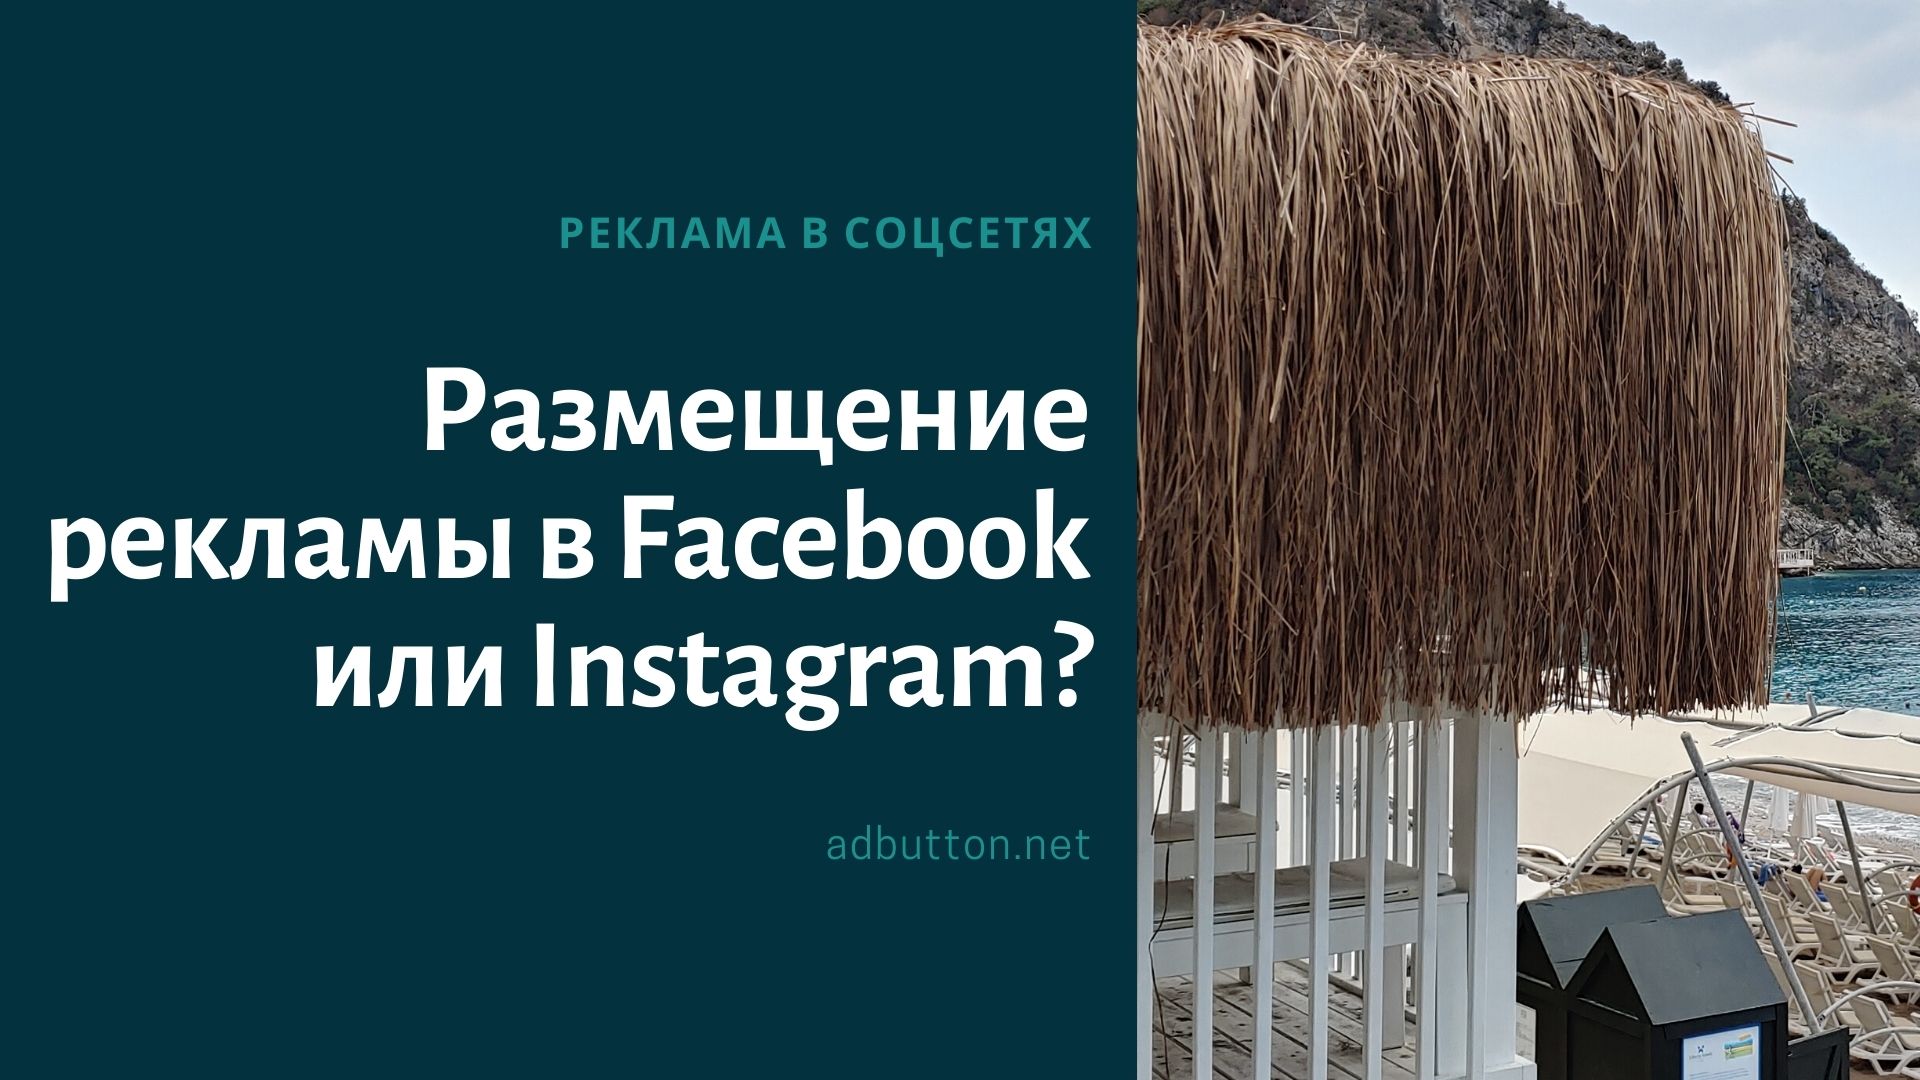 Размещение рекламы в Facebook или Instagram: что лучше?